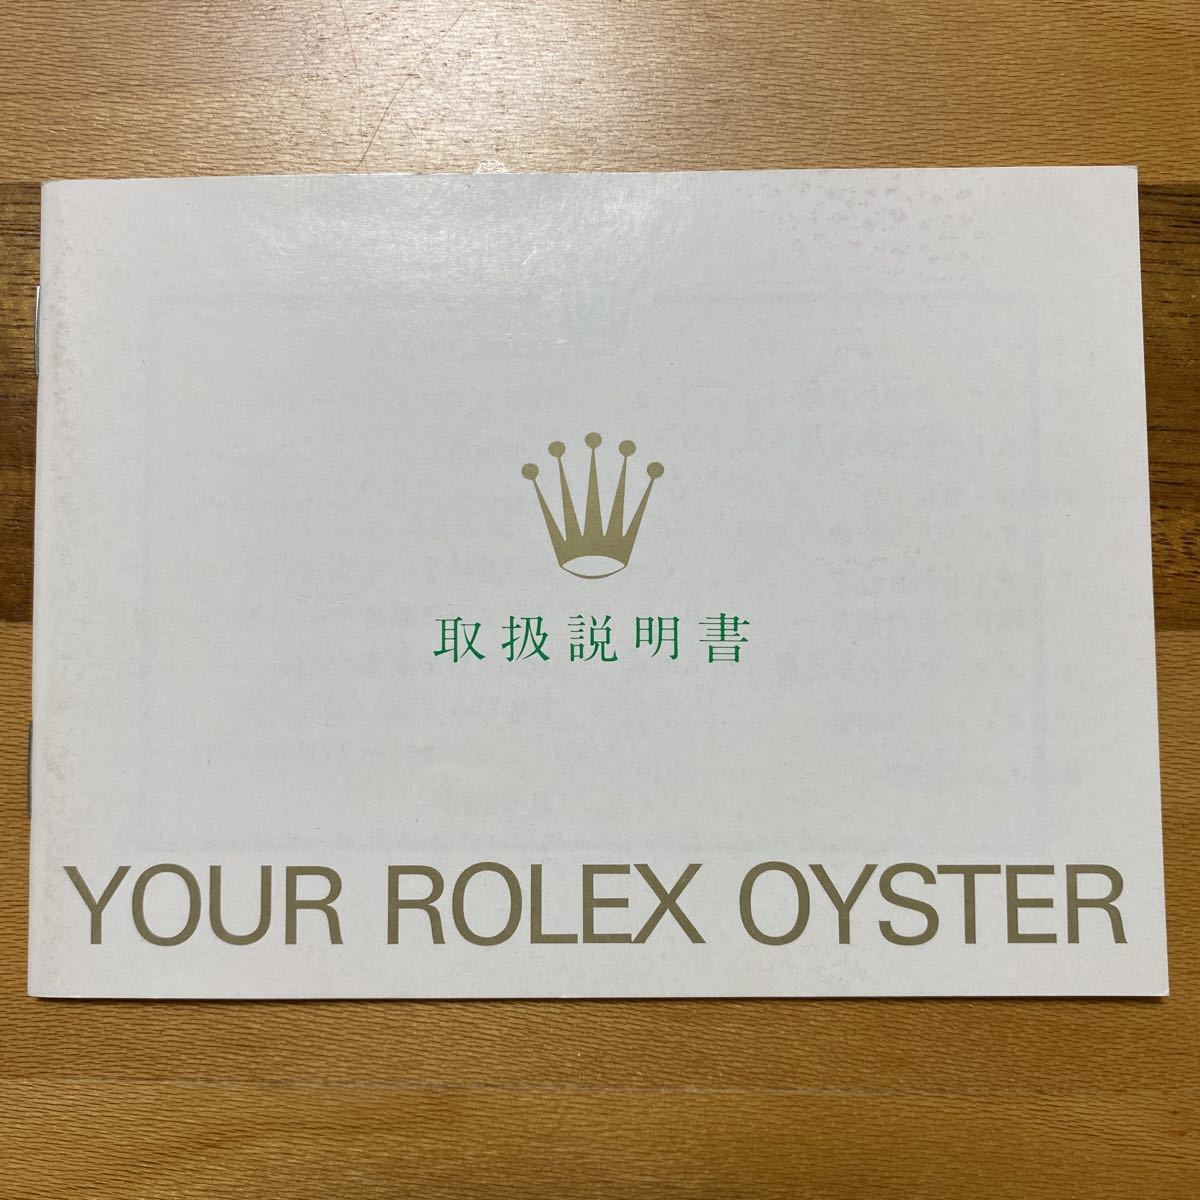 1771【希少必見】ロレックス 取扱説明書 Rolex 定形郵便94円可能の画像1